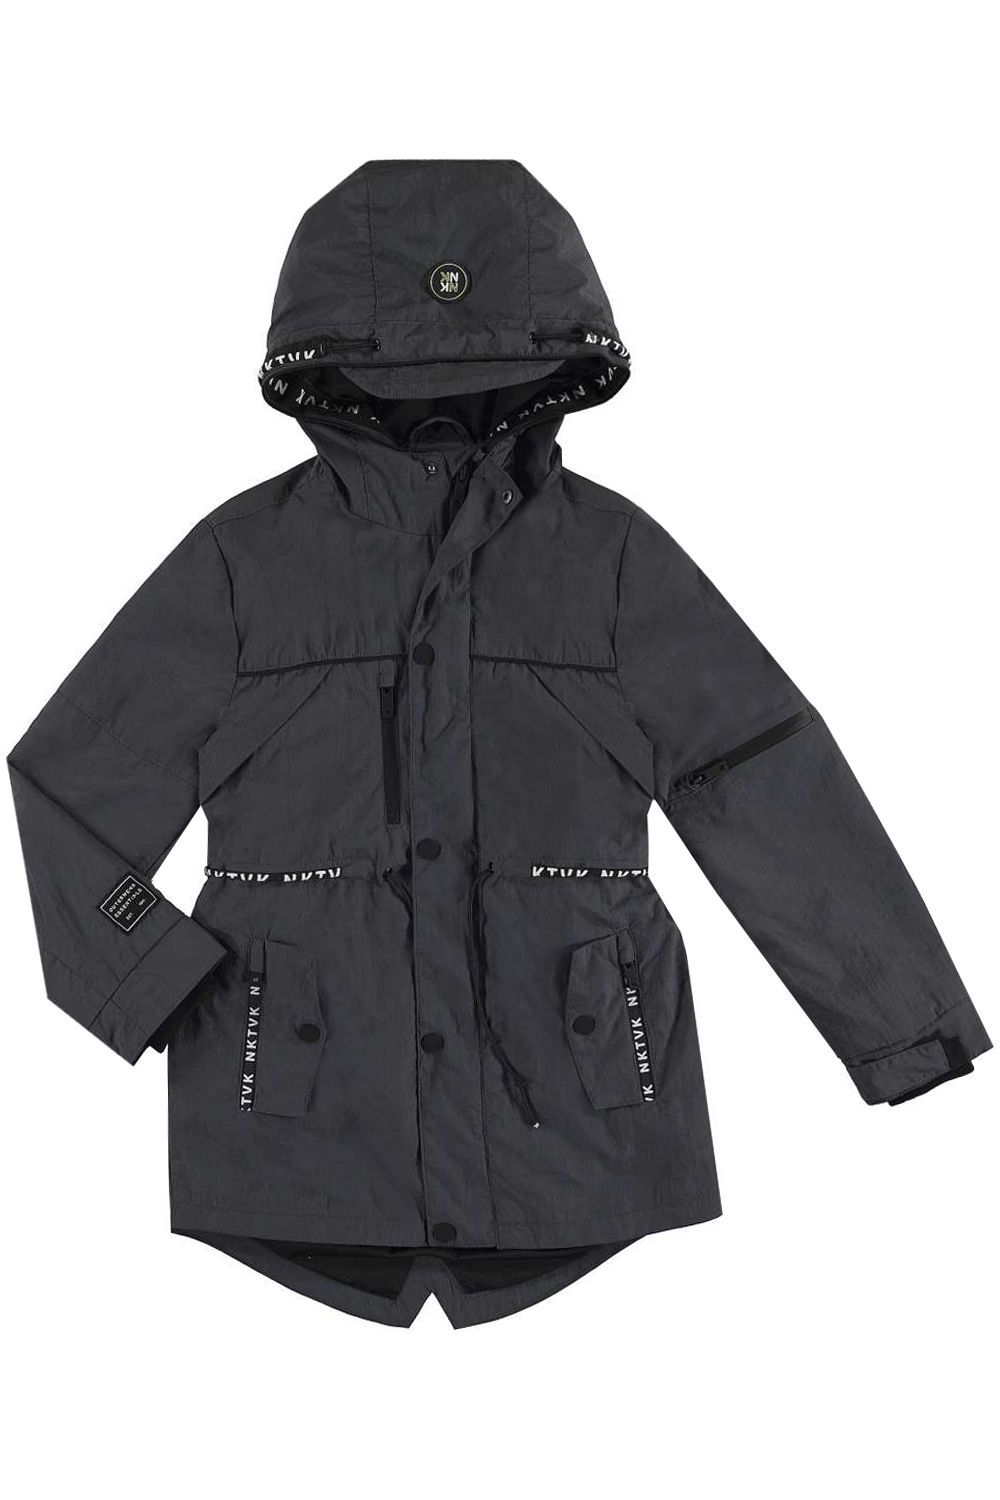 Куртка Mayoral, размер 166, цвет серый 6.432/10 - фото 2